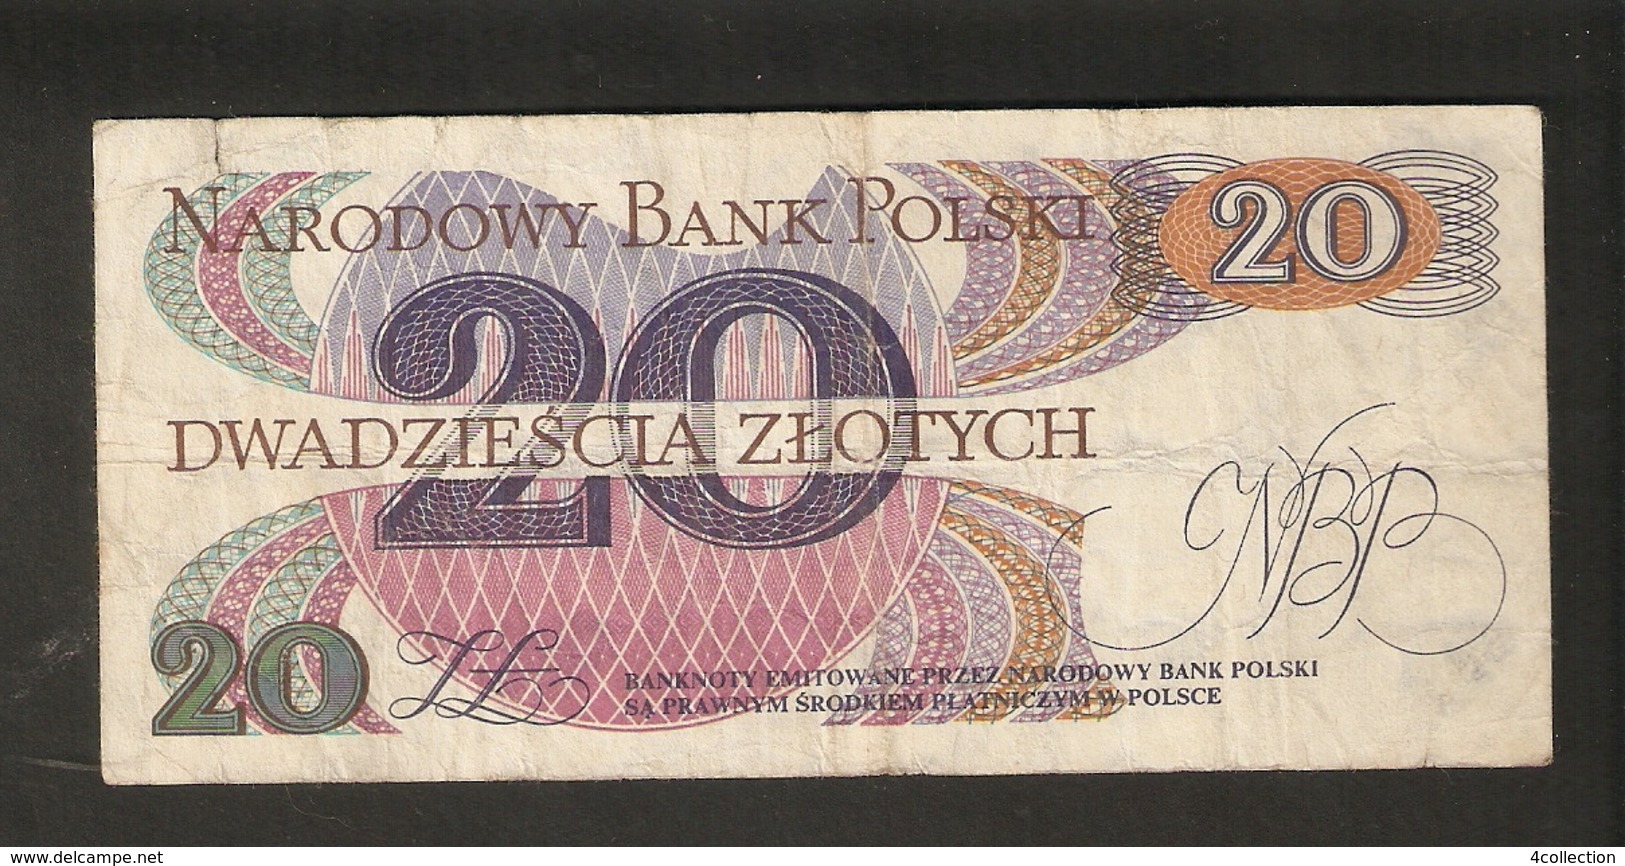 T.  Poland Narodowy Bank Polski 20 Zlotych 1982 Y 1796285 Romuald Traugutt - Polen